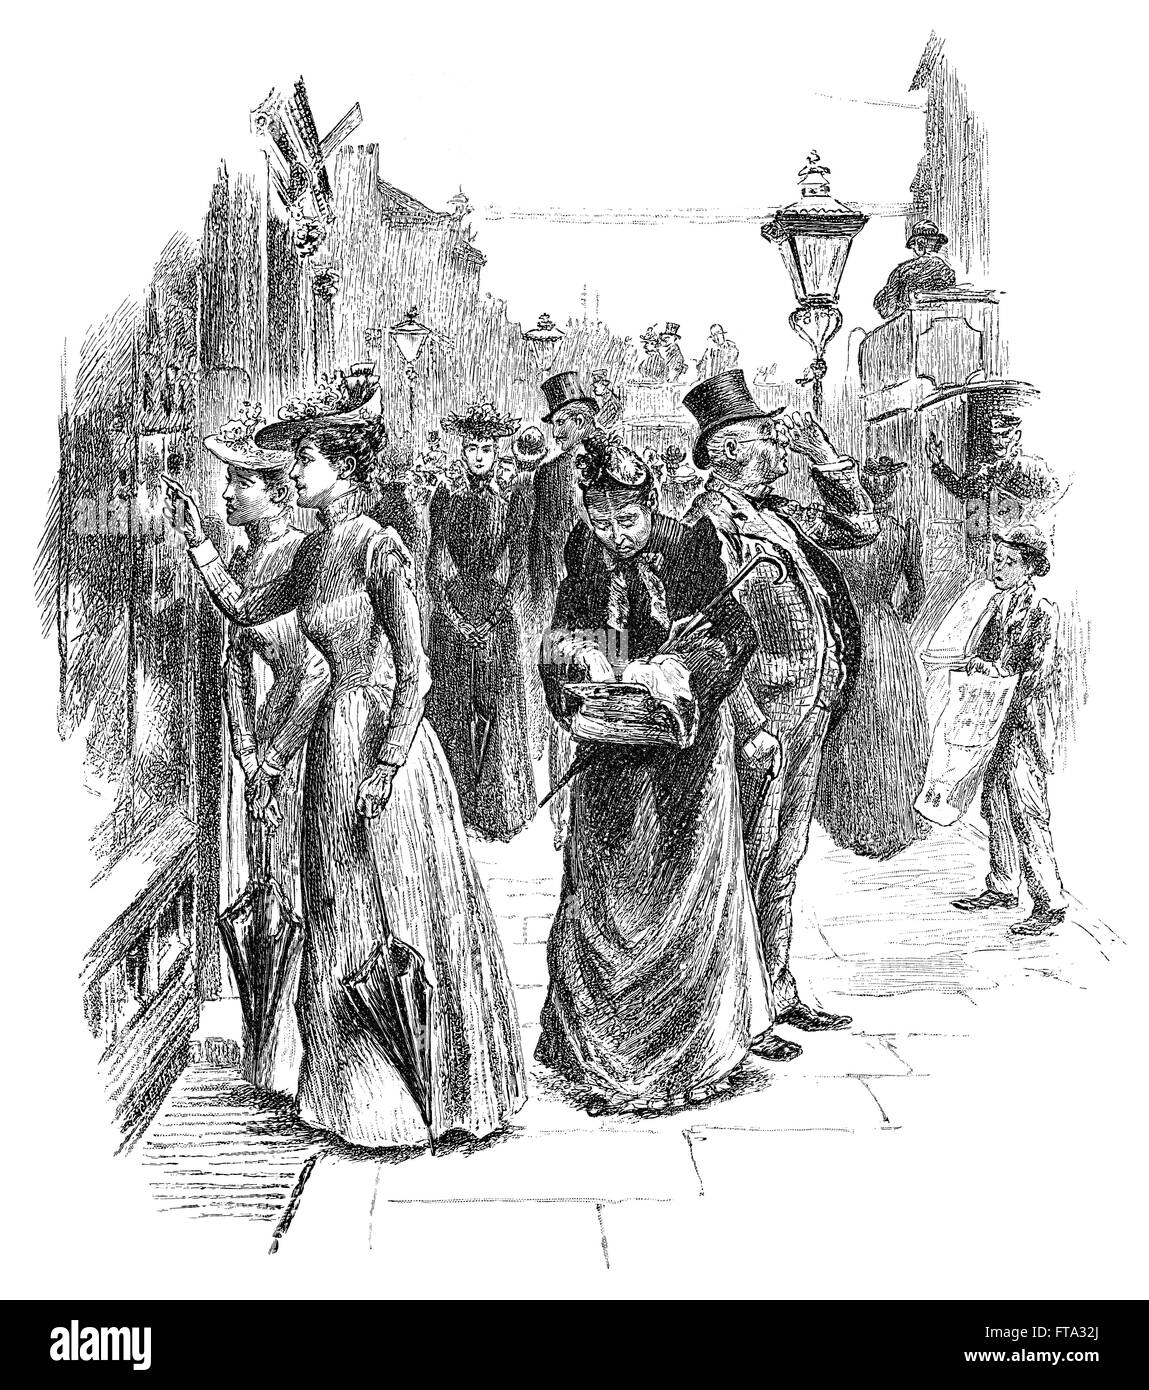 Schwarz / weiß-Gravur von viktorianischen Käufern in einer Londoner Straße. Stockfoto